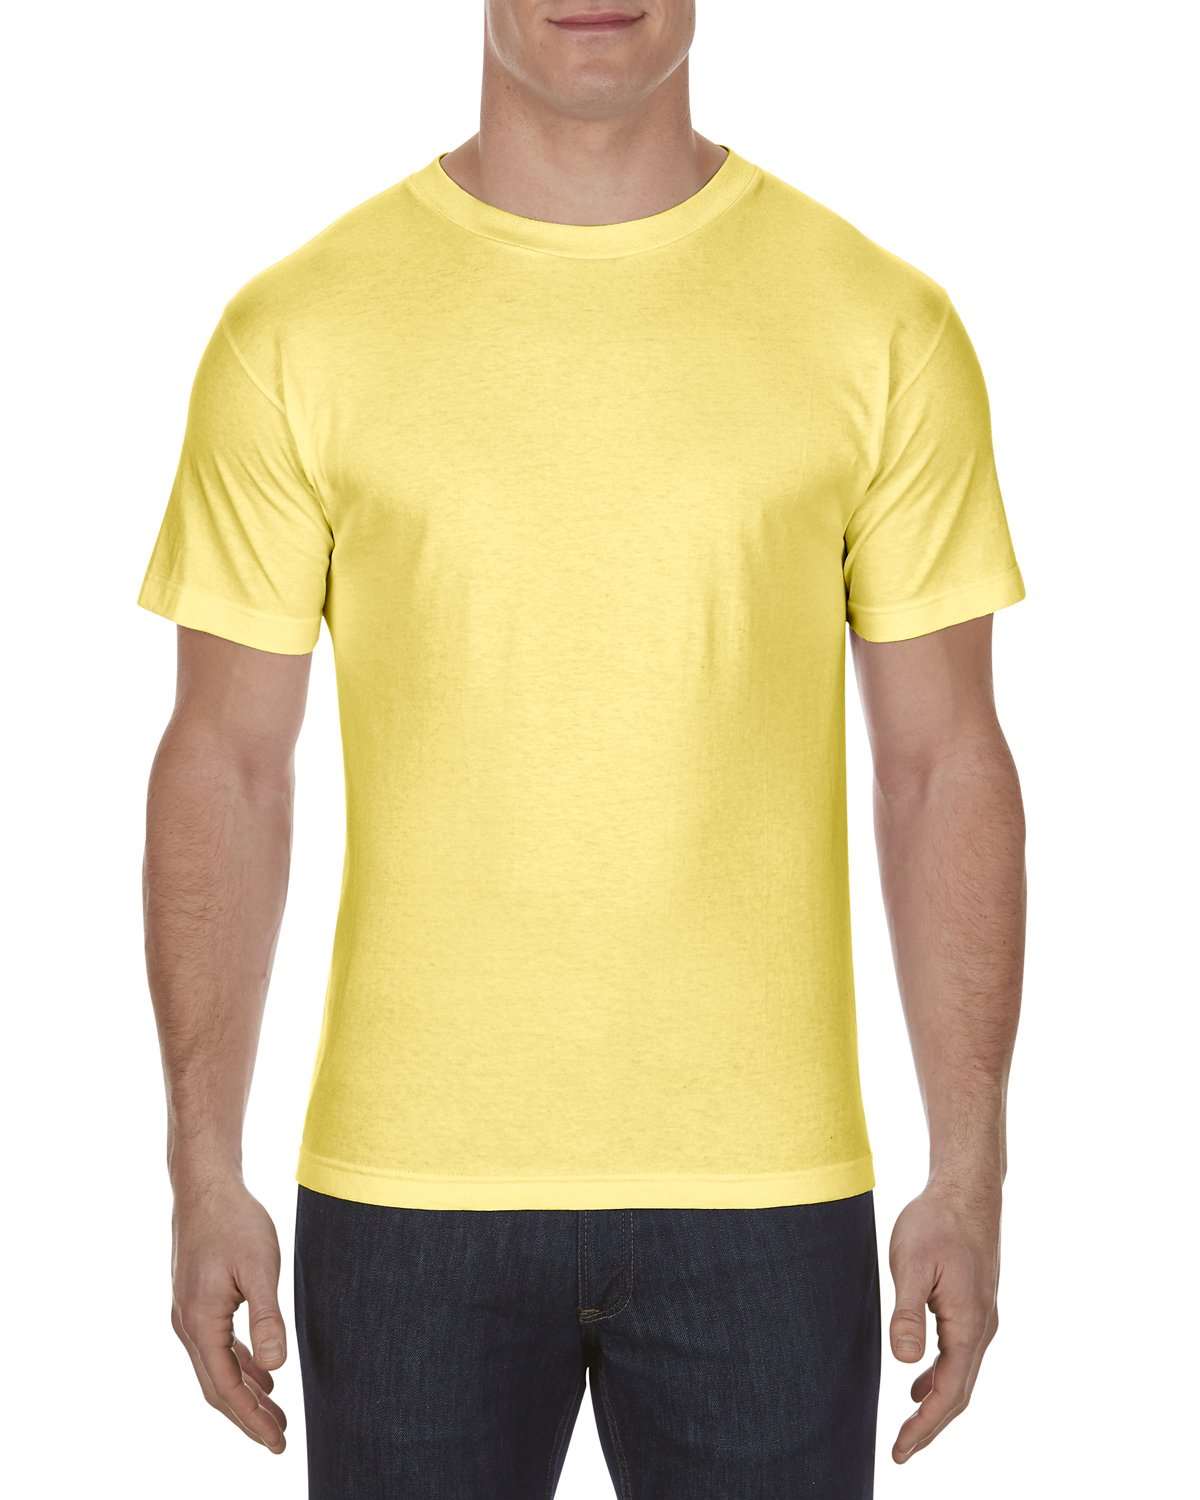 Camiseta t shirt amarillo l ref cr 140 urb - Tiendas Metro